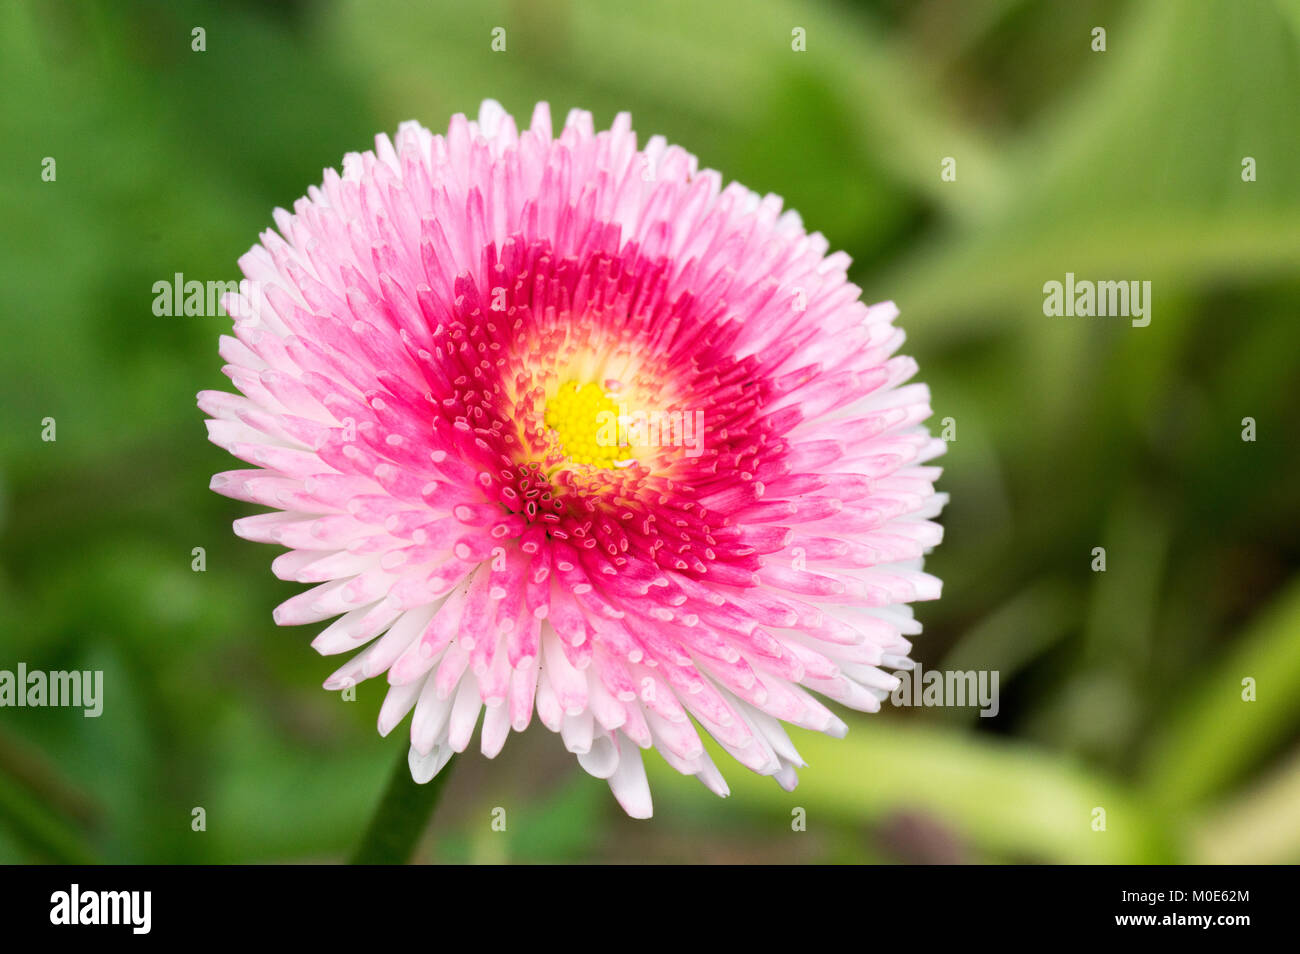 Pink Daisy Pom Pom Flowers Stock Photo Alamy